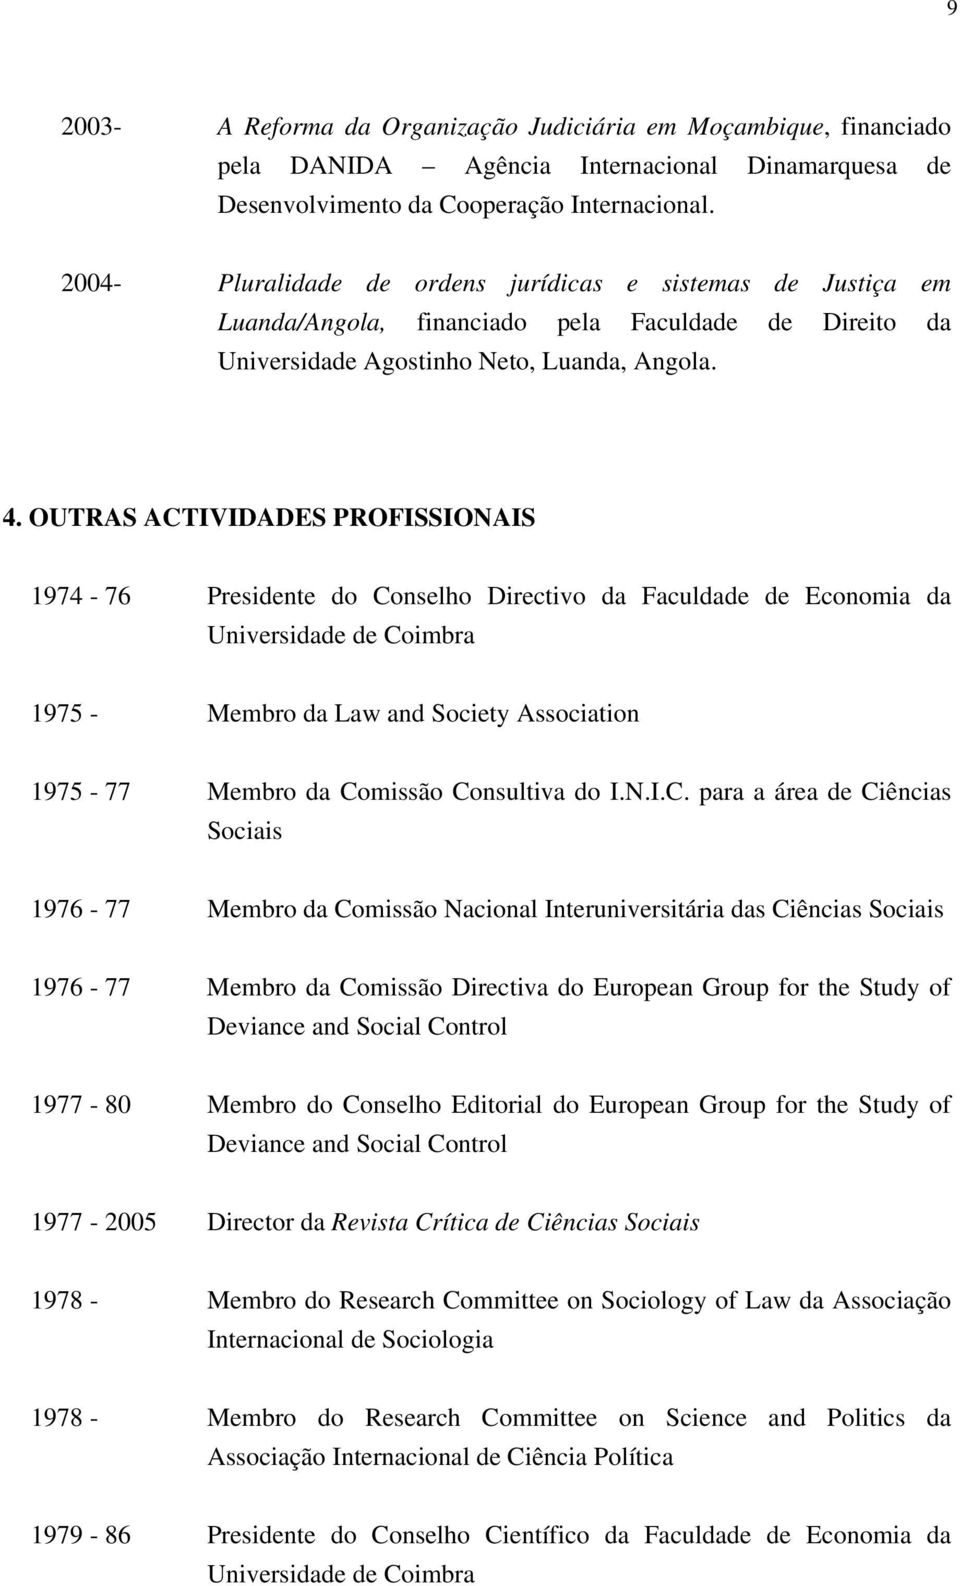 OUTRAS ACTIVIDADES PROFISSIONAIS 1974-76 Presidente do Conselho Directivo da Faculdade de Economia da Universidade de Coimbra 1975 - Membro da Law and Society Association 1975-77 Membro da Comissão